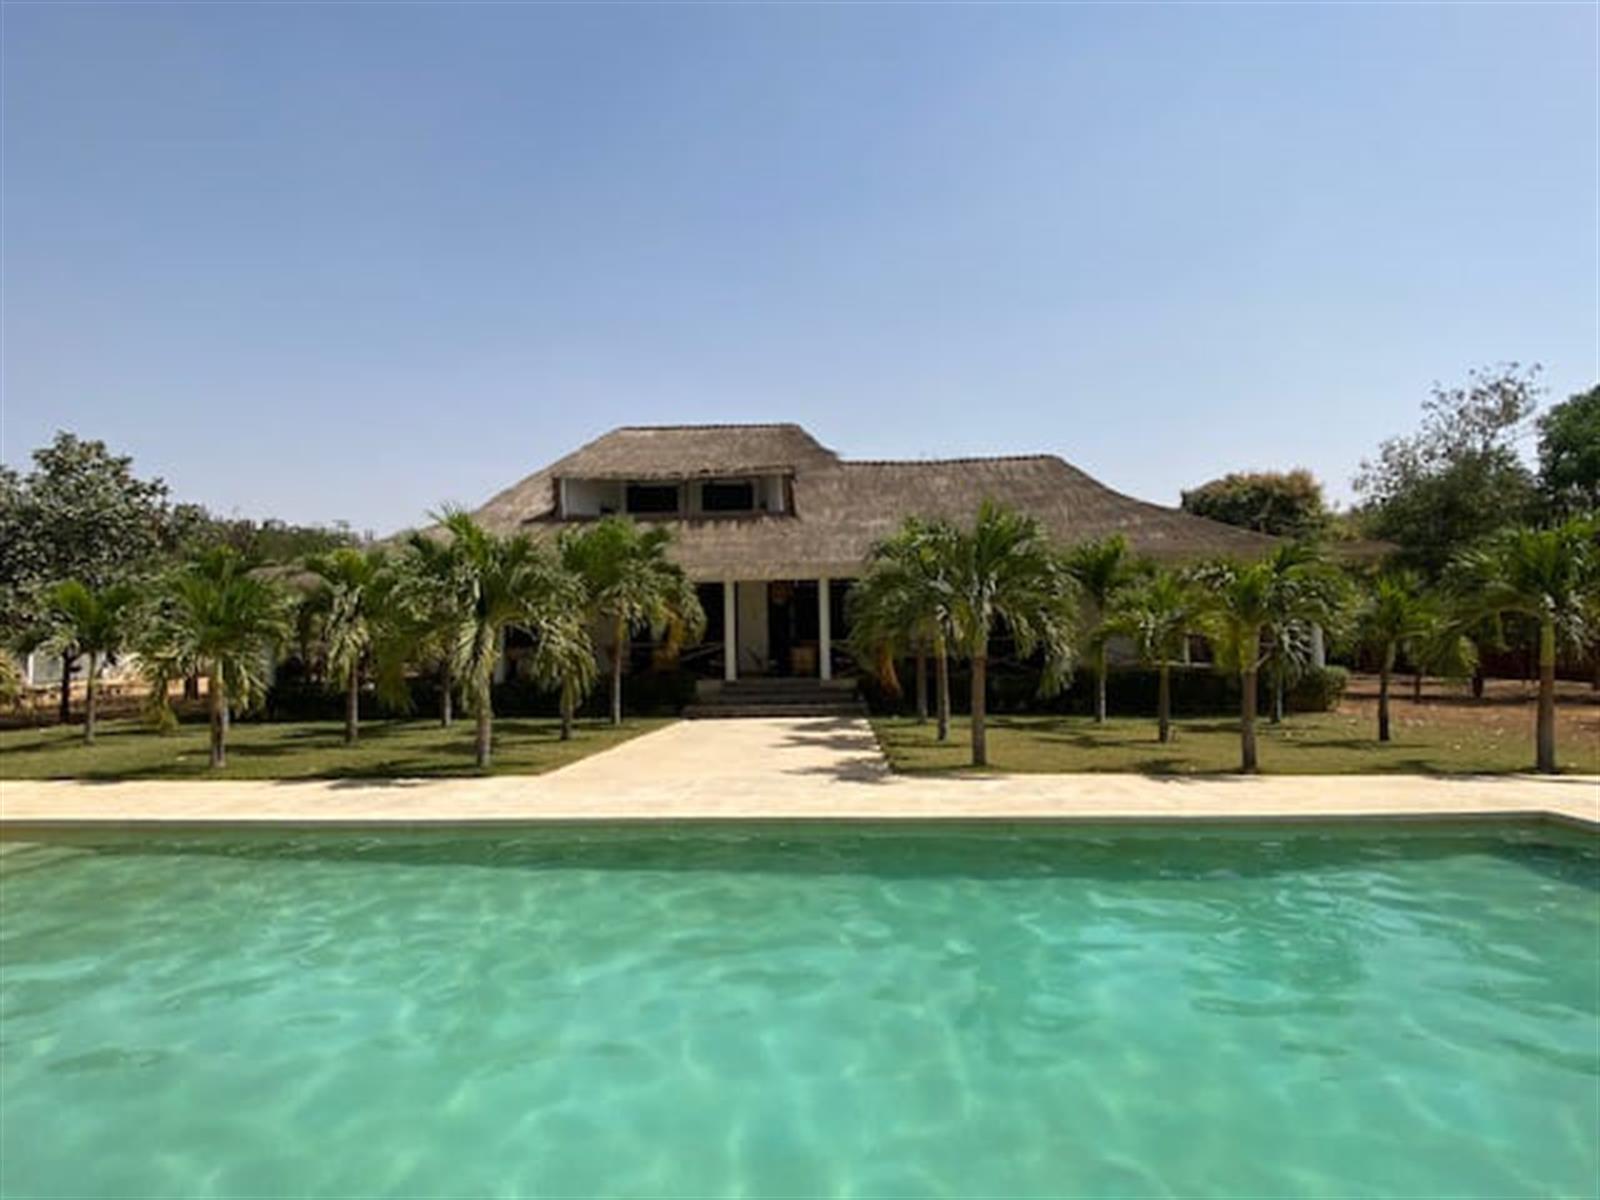 A d�couvrir villa atypique 4 chambres avec piscine offrant de beaux espaces de vie